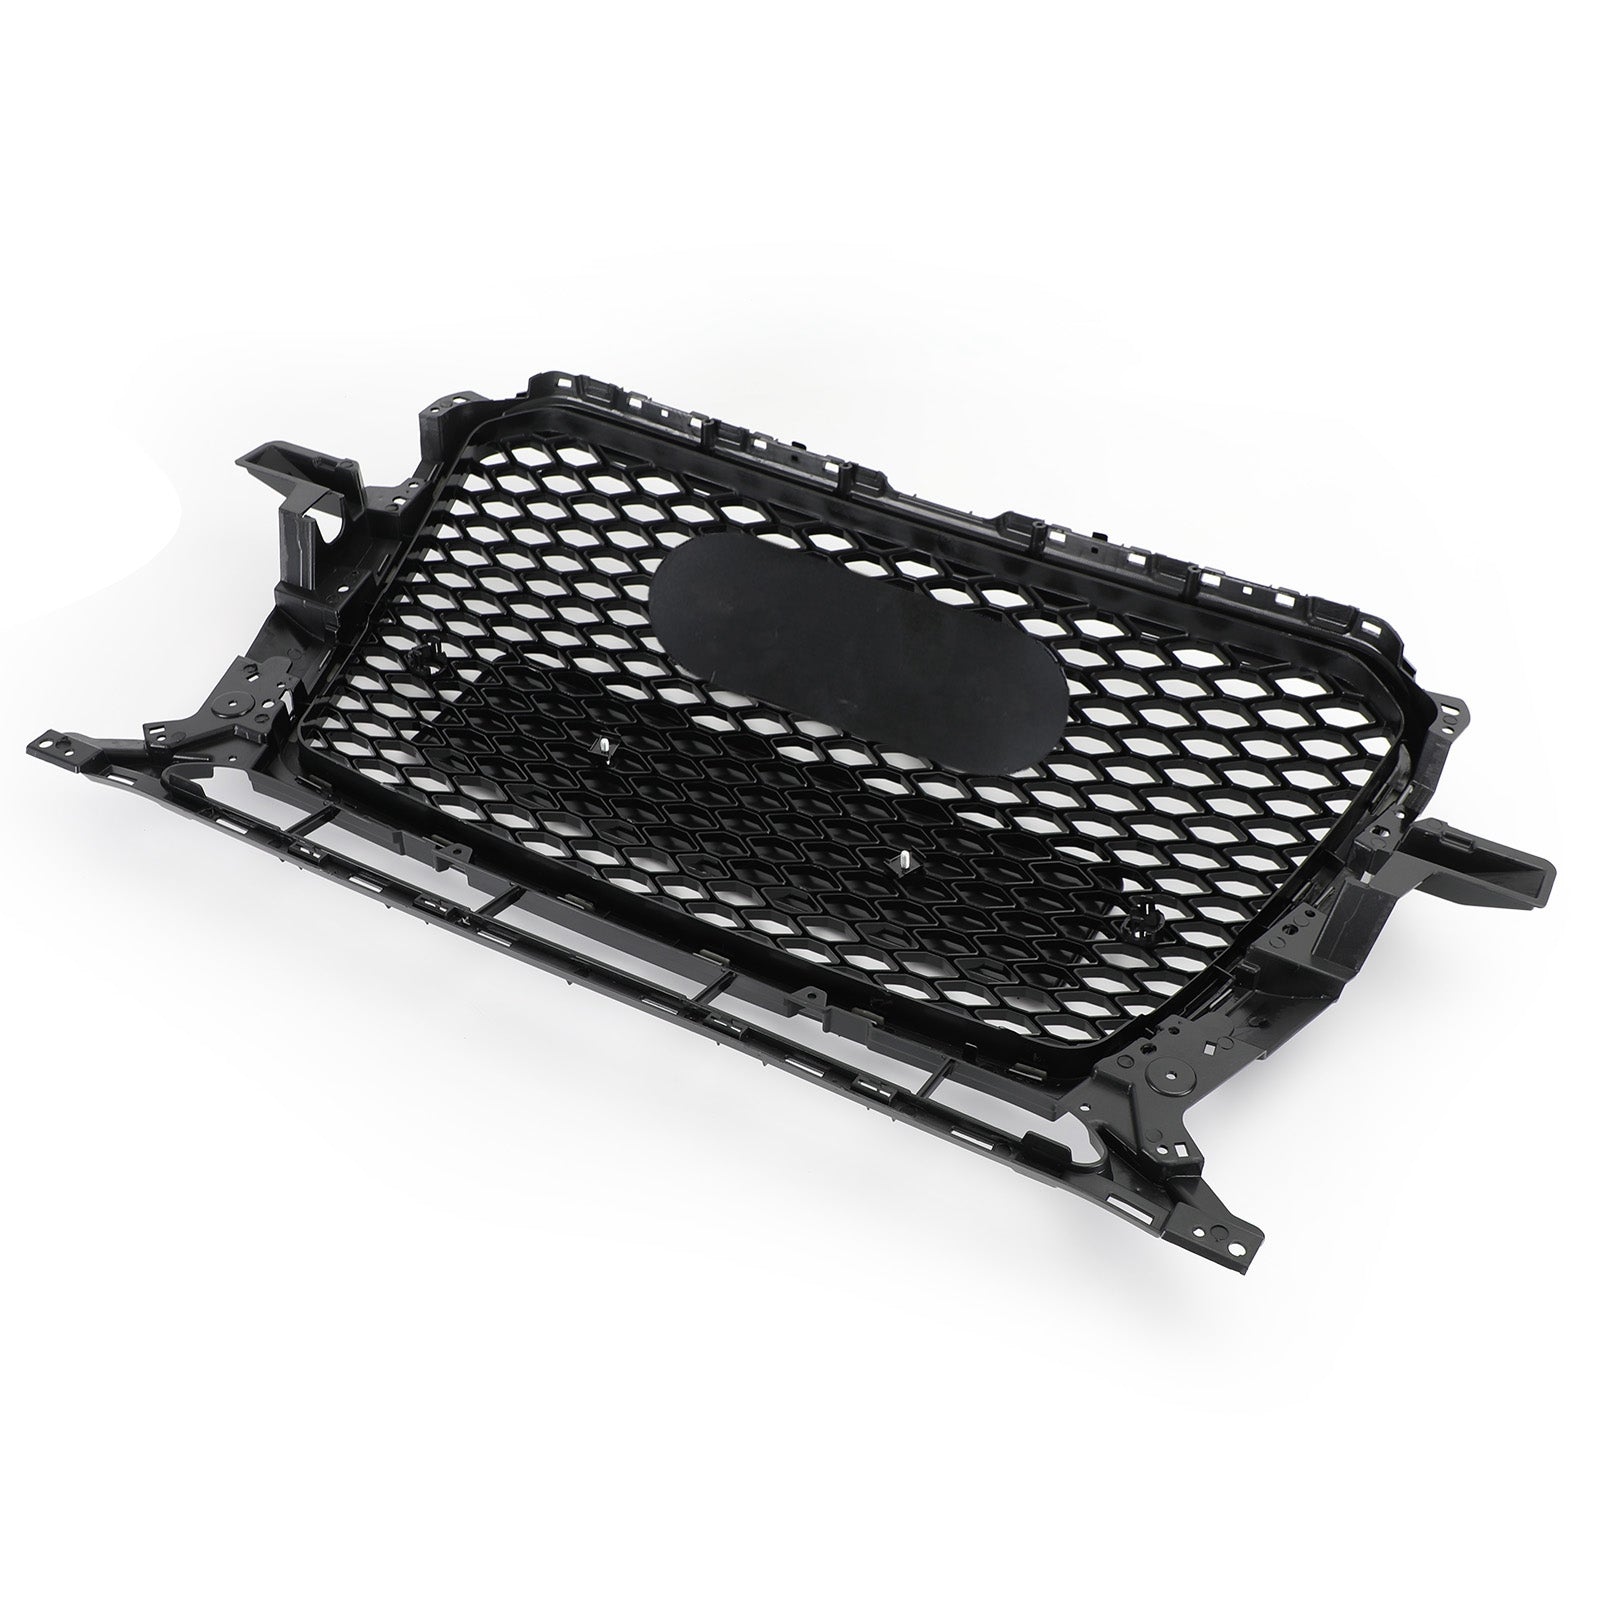 Parrilla hexagonal deportiva de malla de panal estilo RSQ5 compatible con Audi Q5 2013-2017, negro brillante